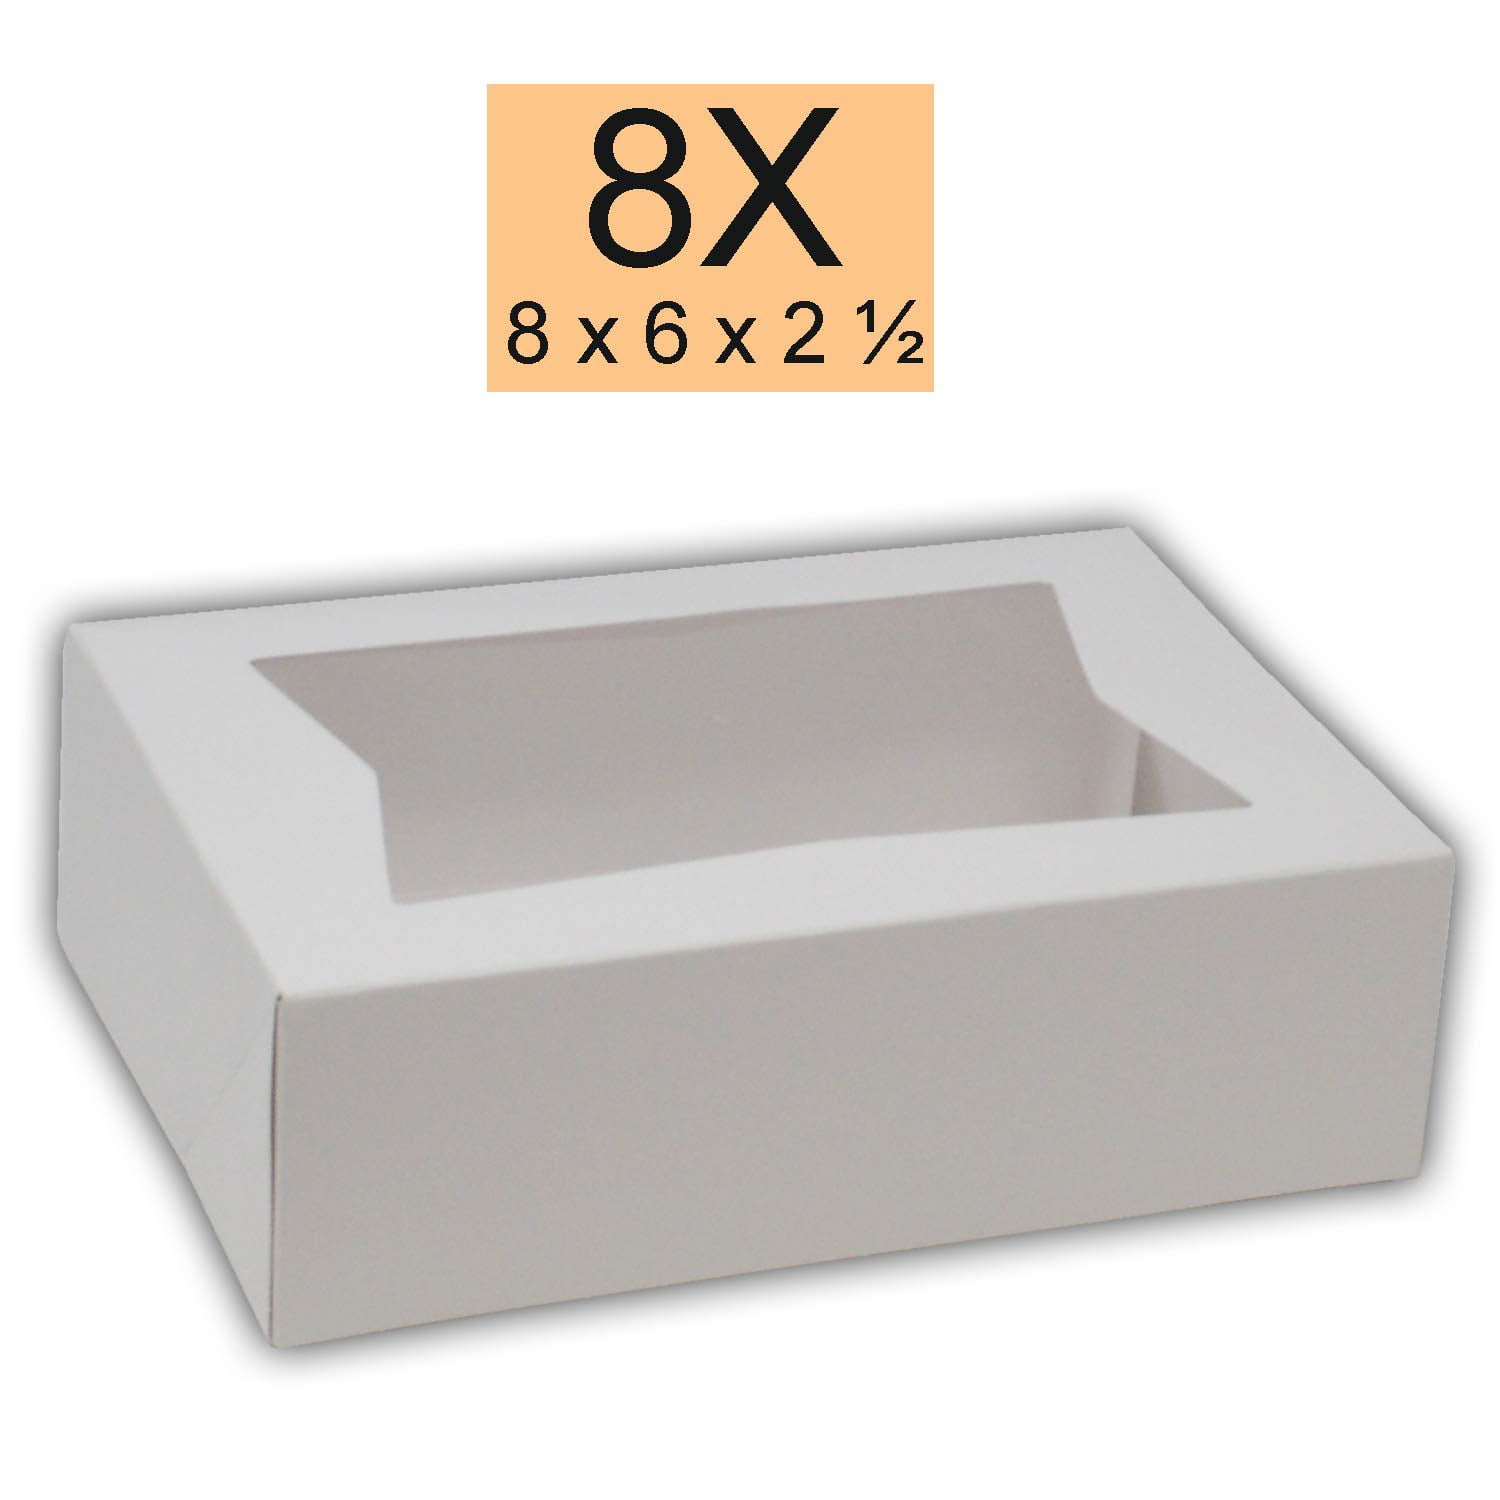 5 x Bakery Box Transport Box brötchenbox lattice boxes Grey Height 15 cm NEW 